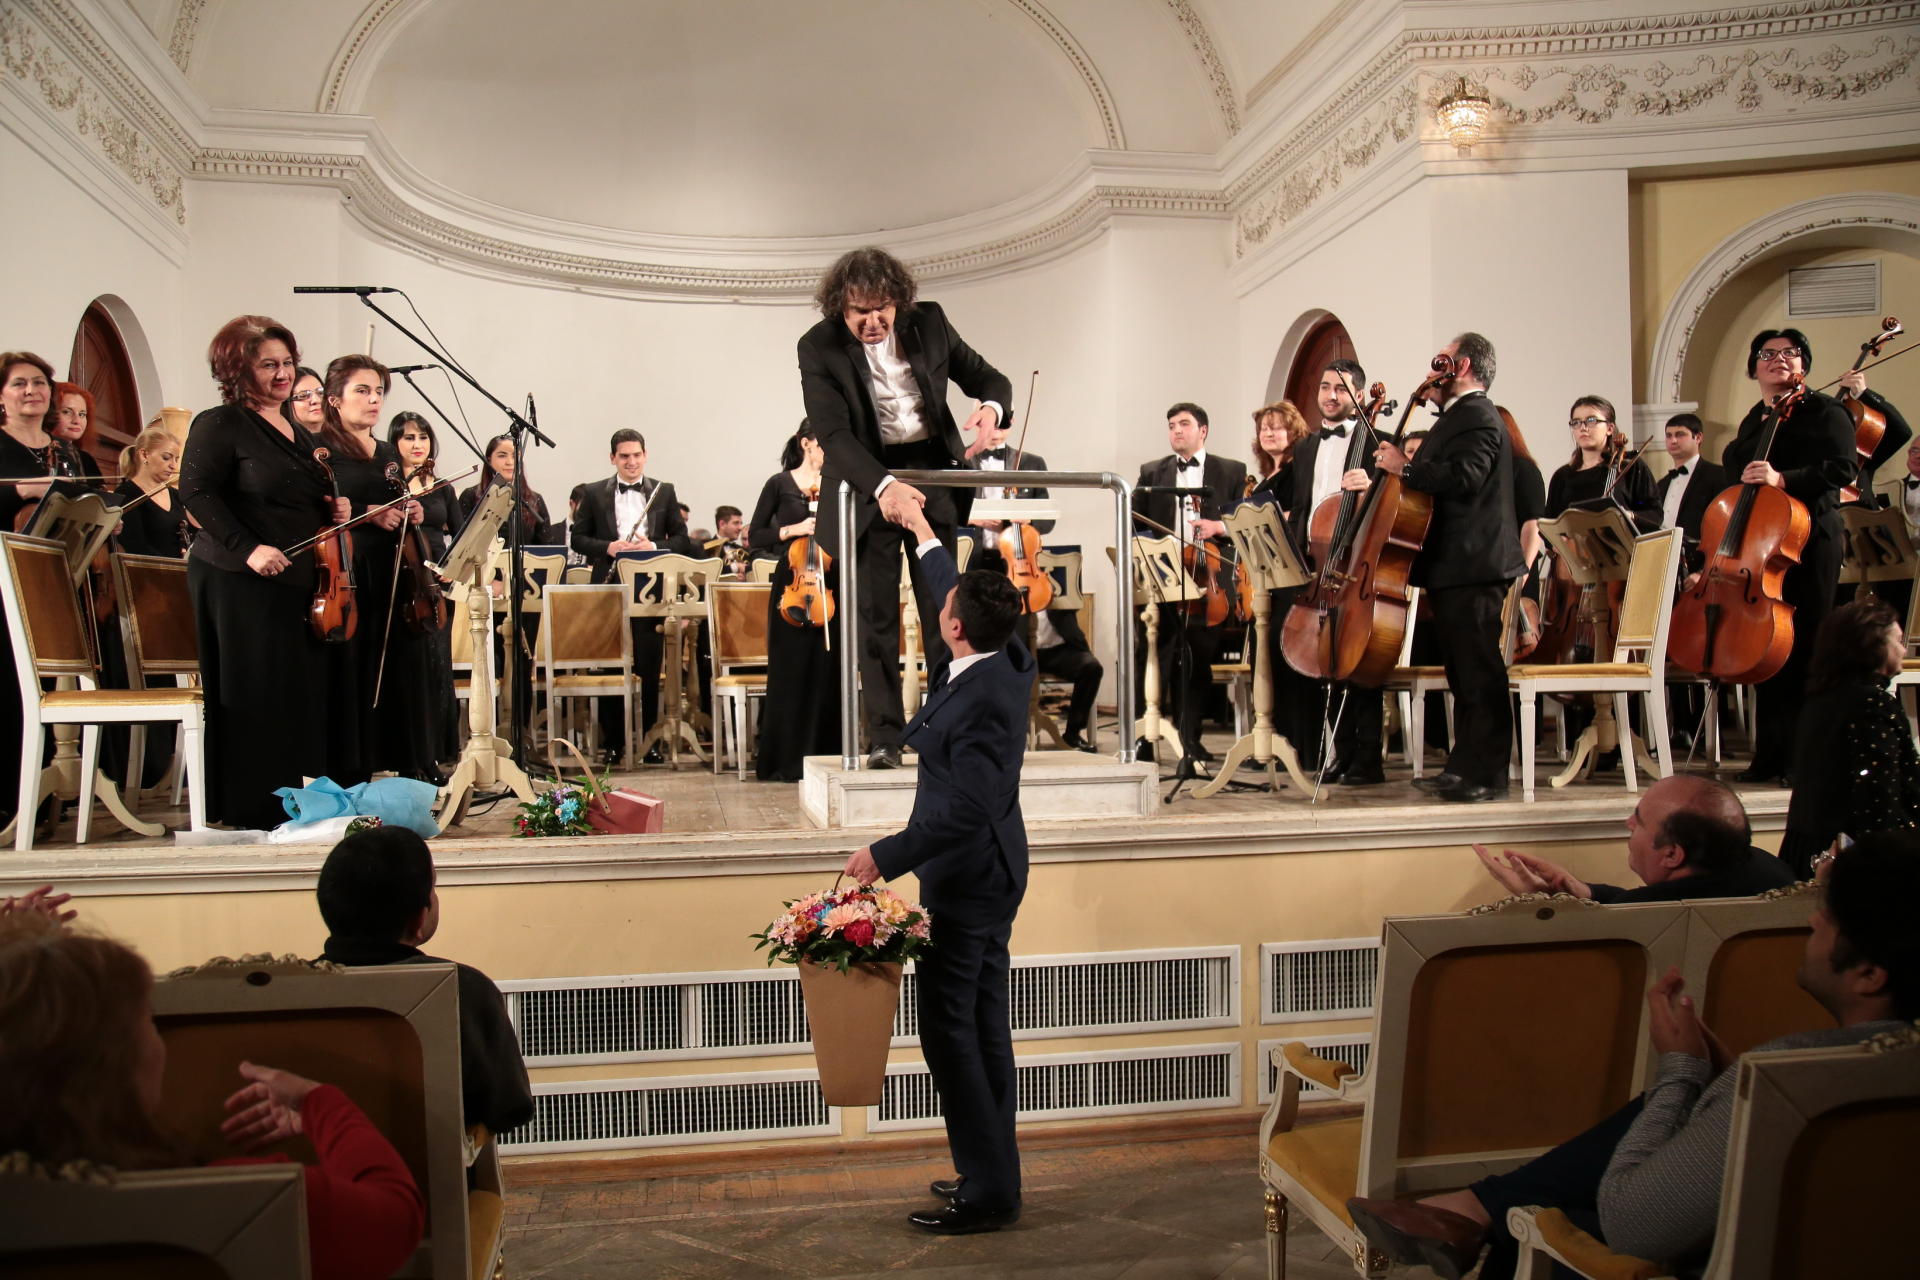 Gənc bəstəkarların əsərlərindən ibarət “Gəncliyin səsi” adlı konsert keçirilib (FOTO)